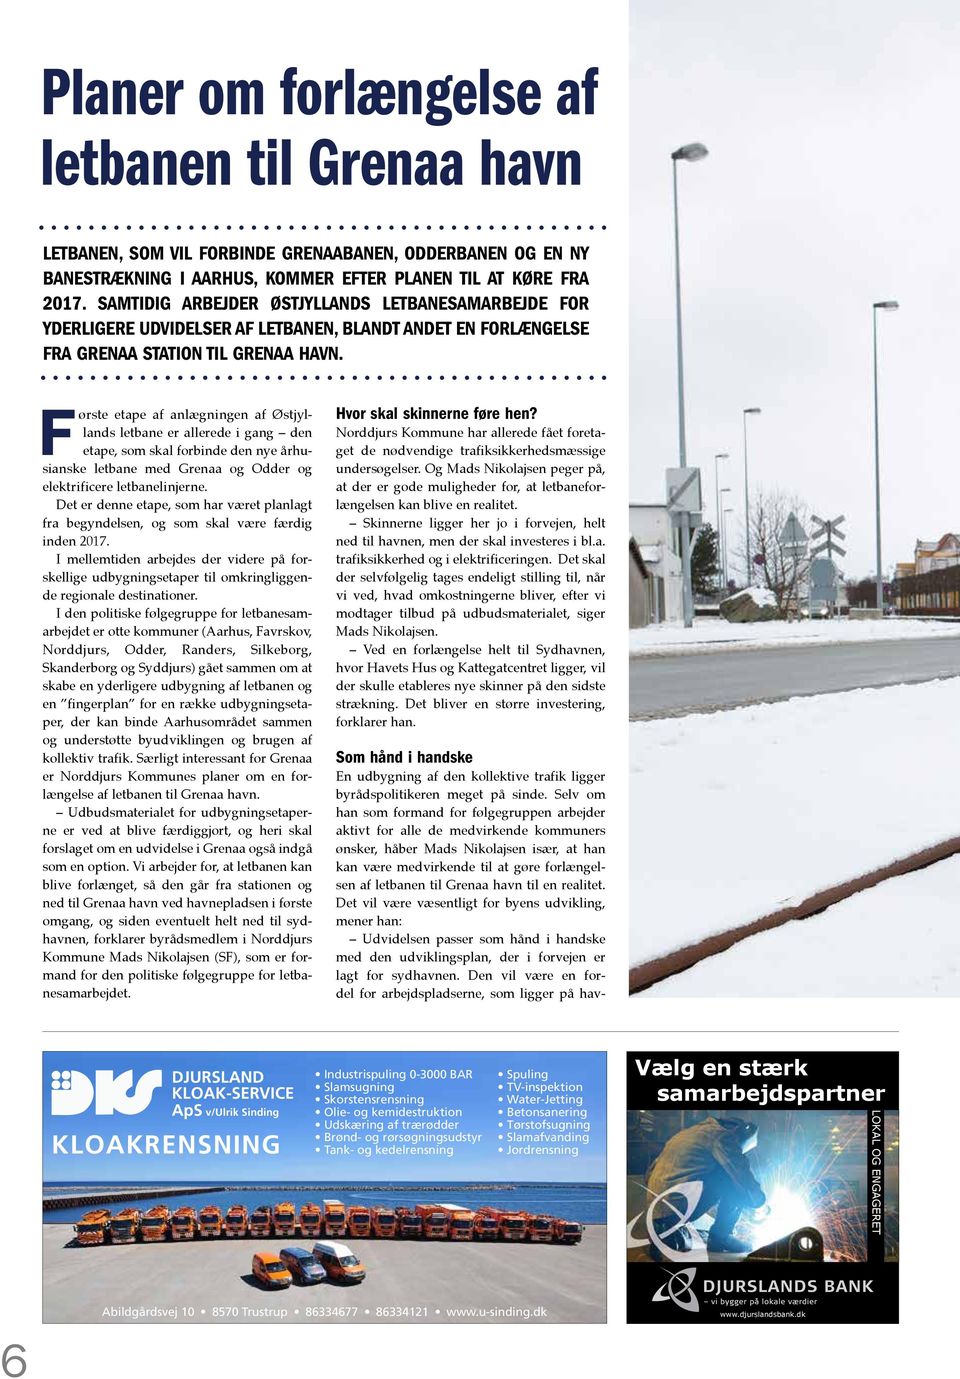 F ørste etape af anlægningen af Østjyllands letbane er allerede i gang den etape, som skal forbinde den nye århusianske letbane med Grenaa og Odder og elektrificere letbanelinjerne.